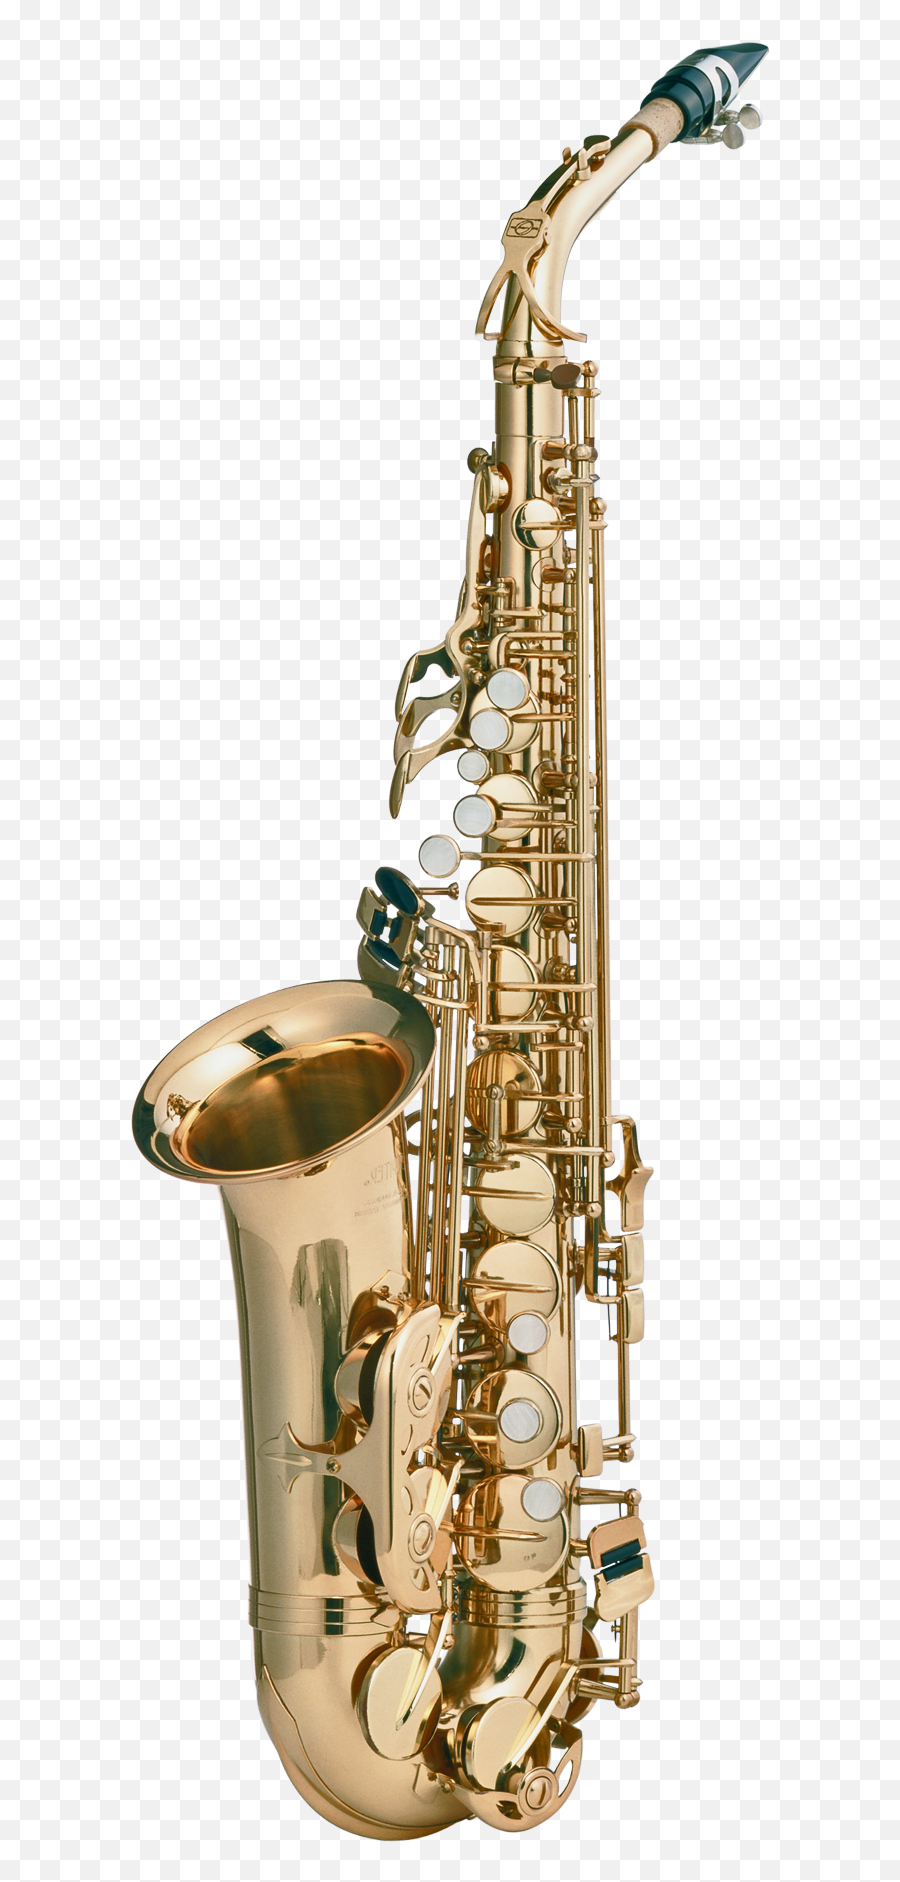 Saxophone Png Image - Transparent Background Saxophone Transparent Emoji,Saxophone Png